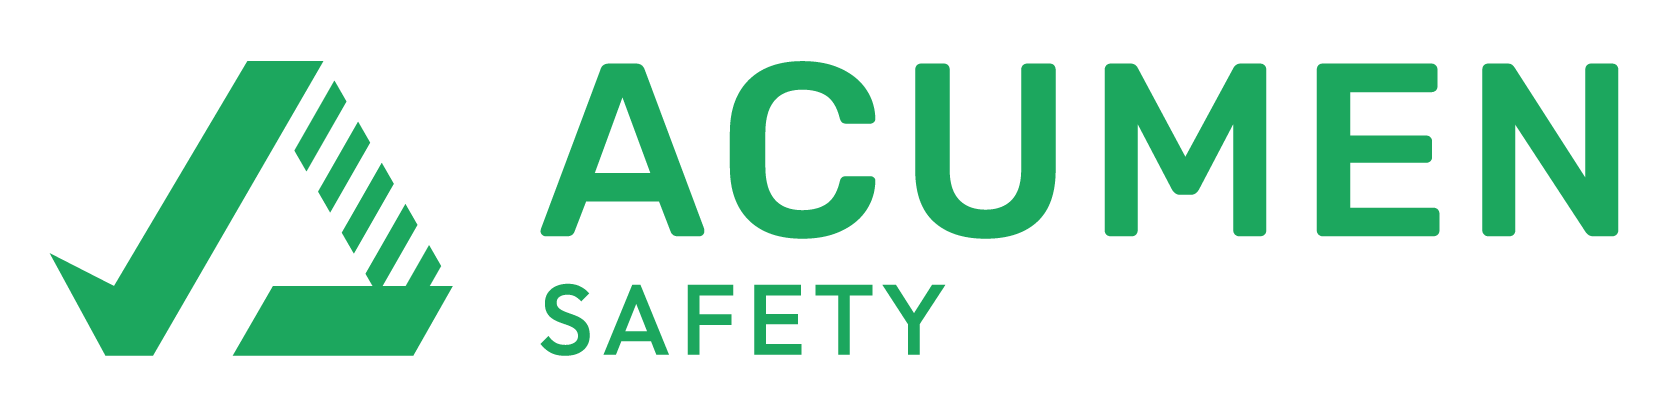 Acumen Safety Logo